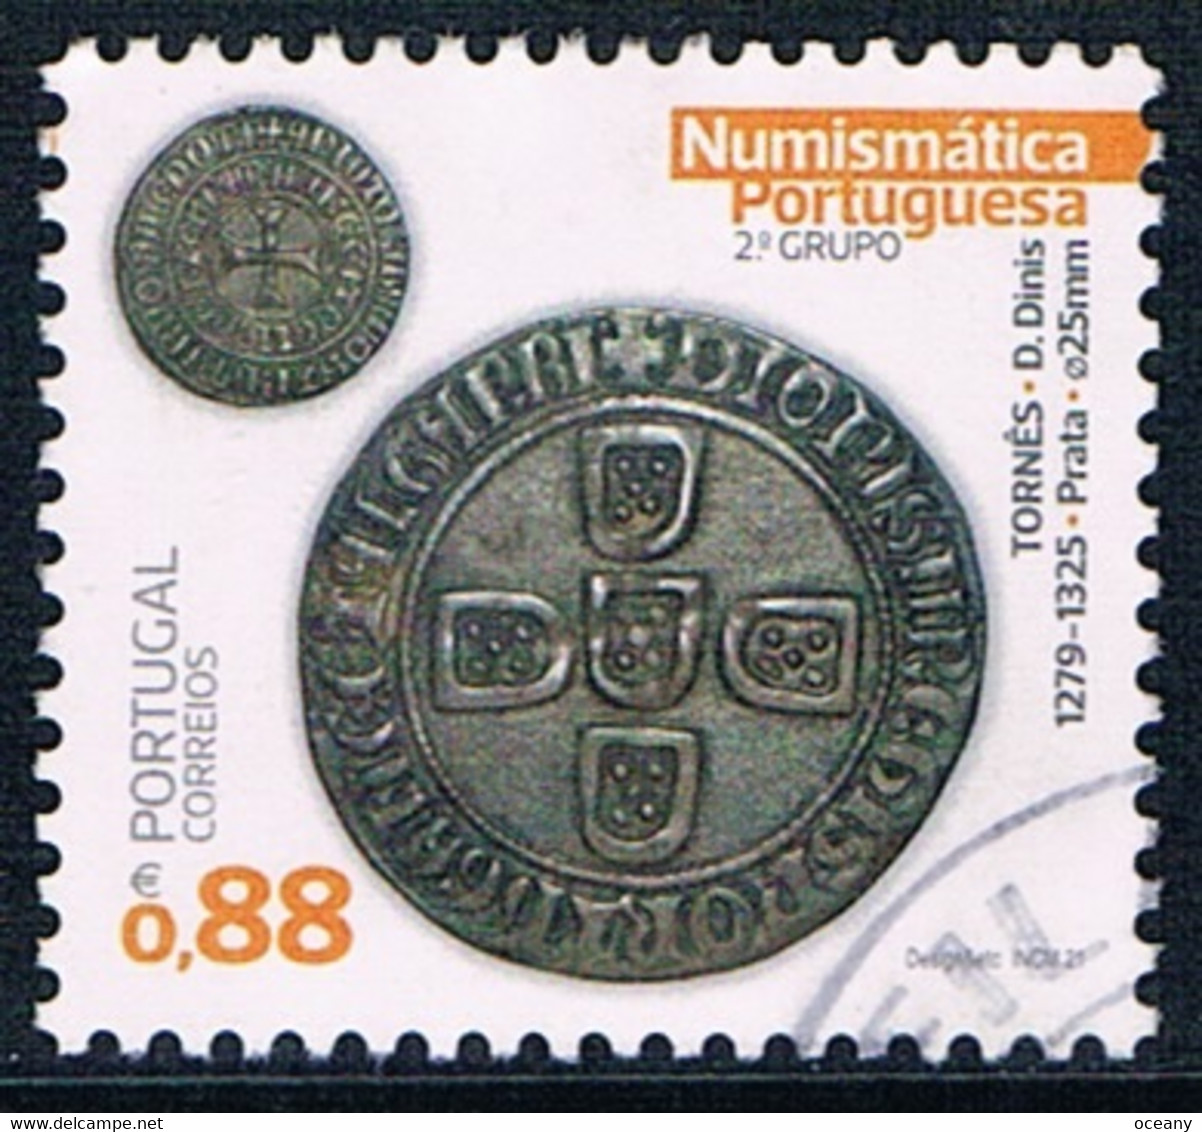 Portugal - Numismatique : Anciennes Monnaies (II) 4717 (année 2021) Oblit. - Oblitérés